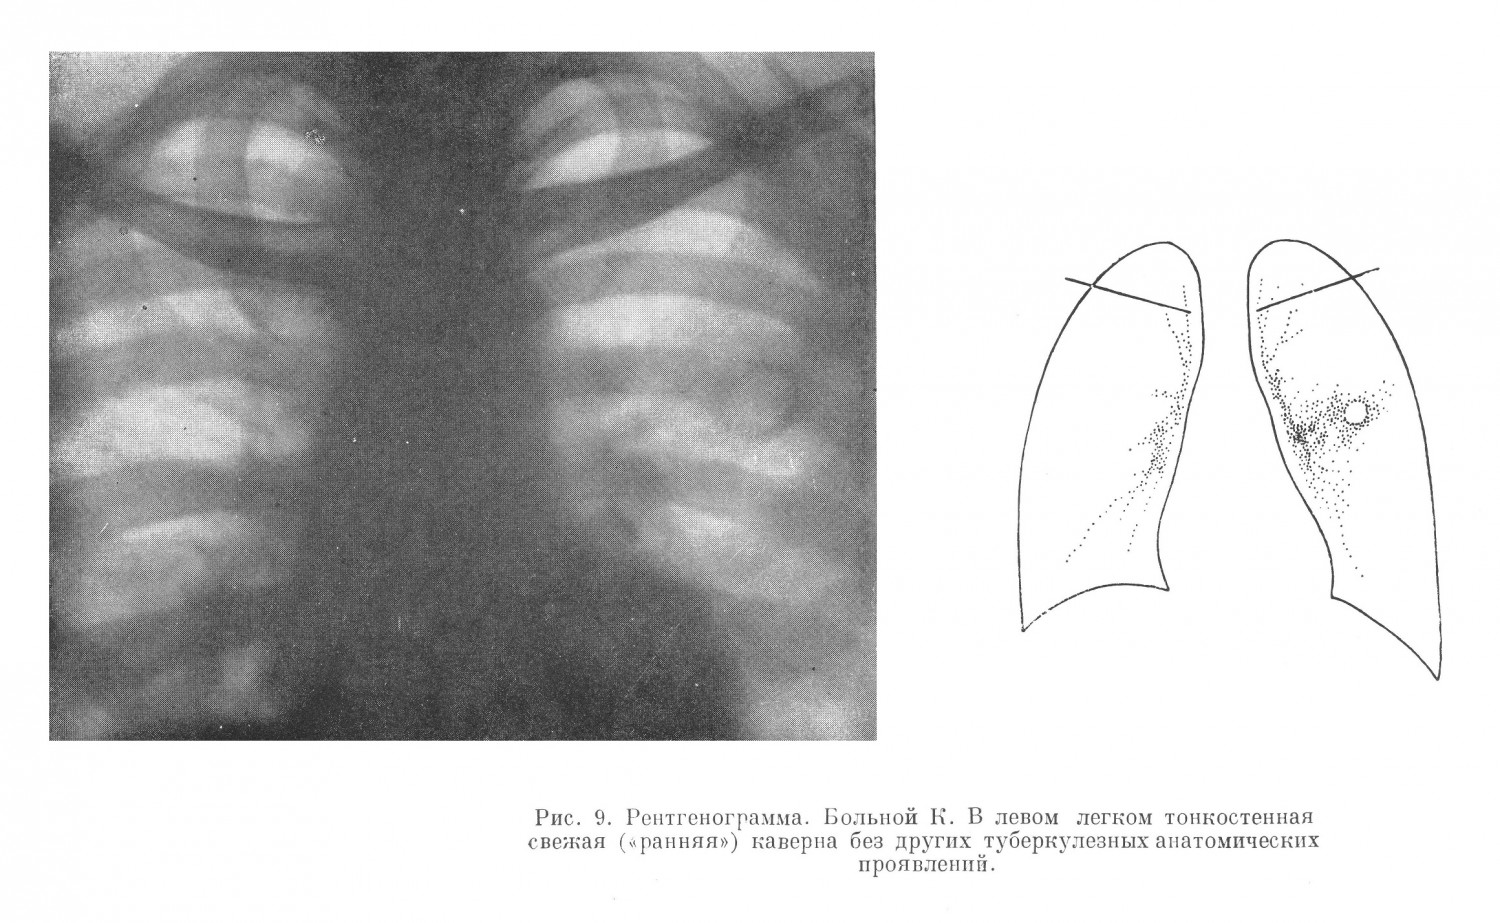 рентгенологическом обследовании в левом легком был обнаружен ранний инфильтрат